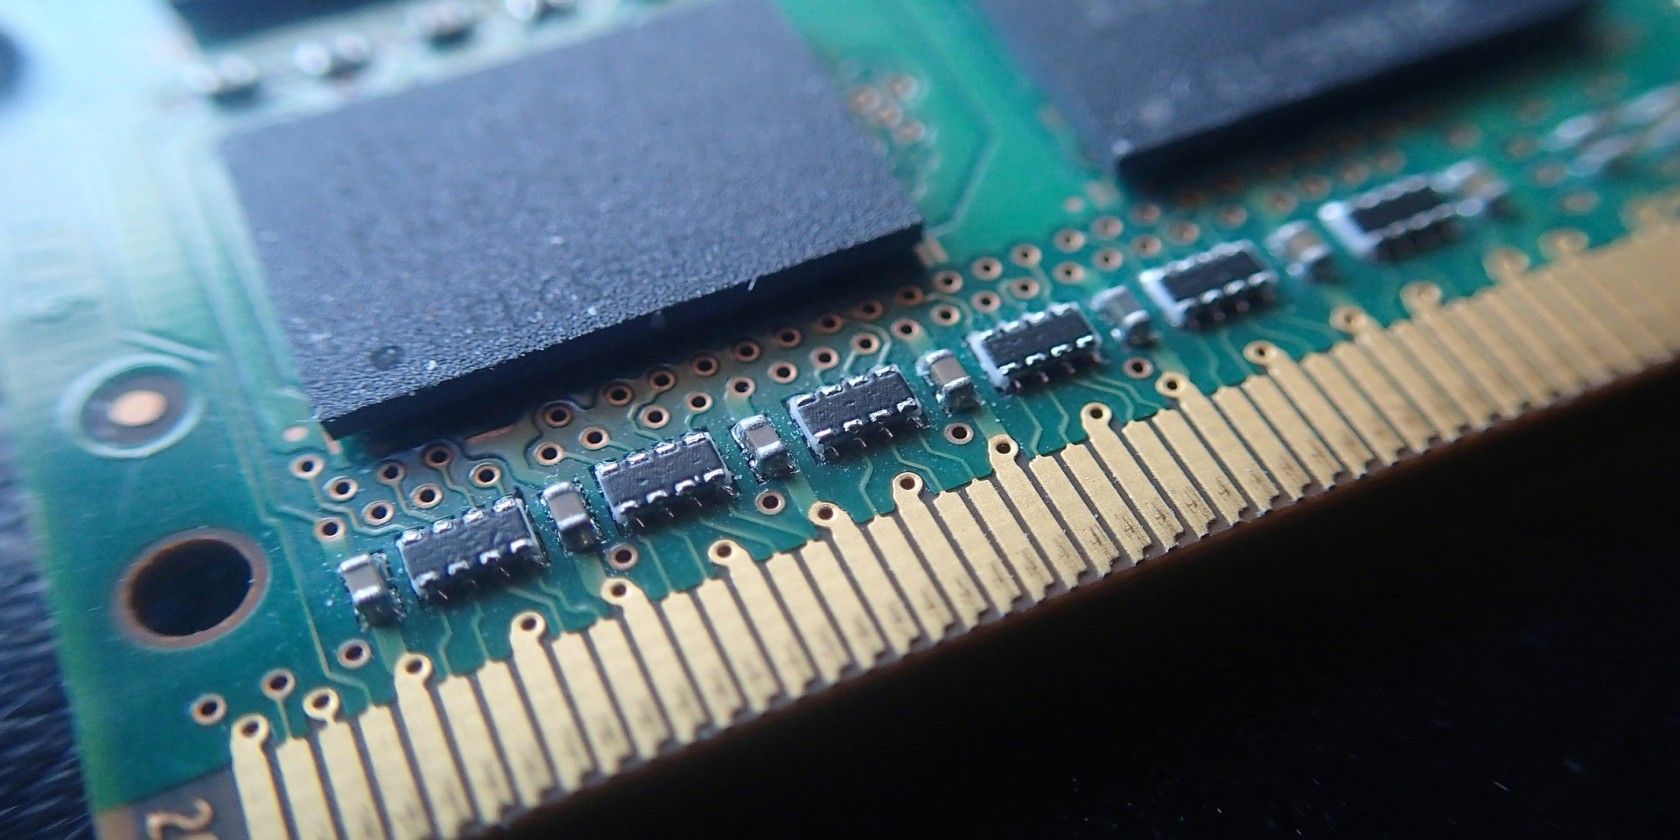 A close up stick of RAM on a desk